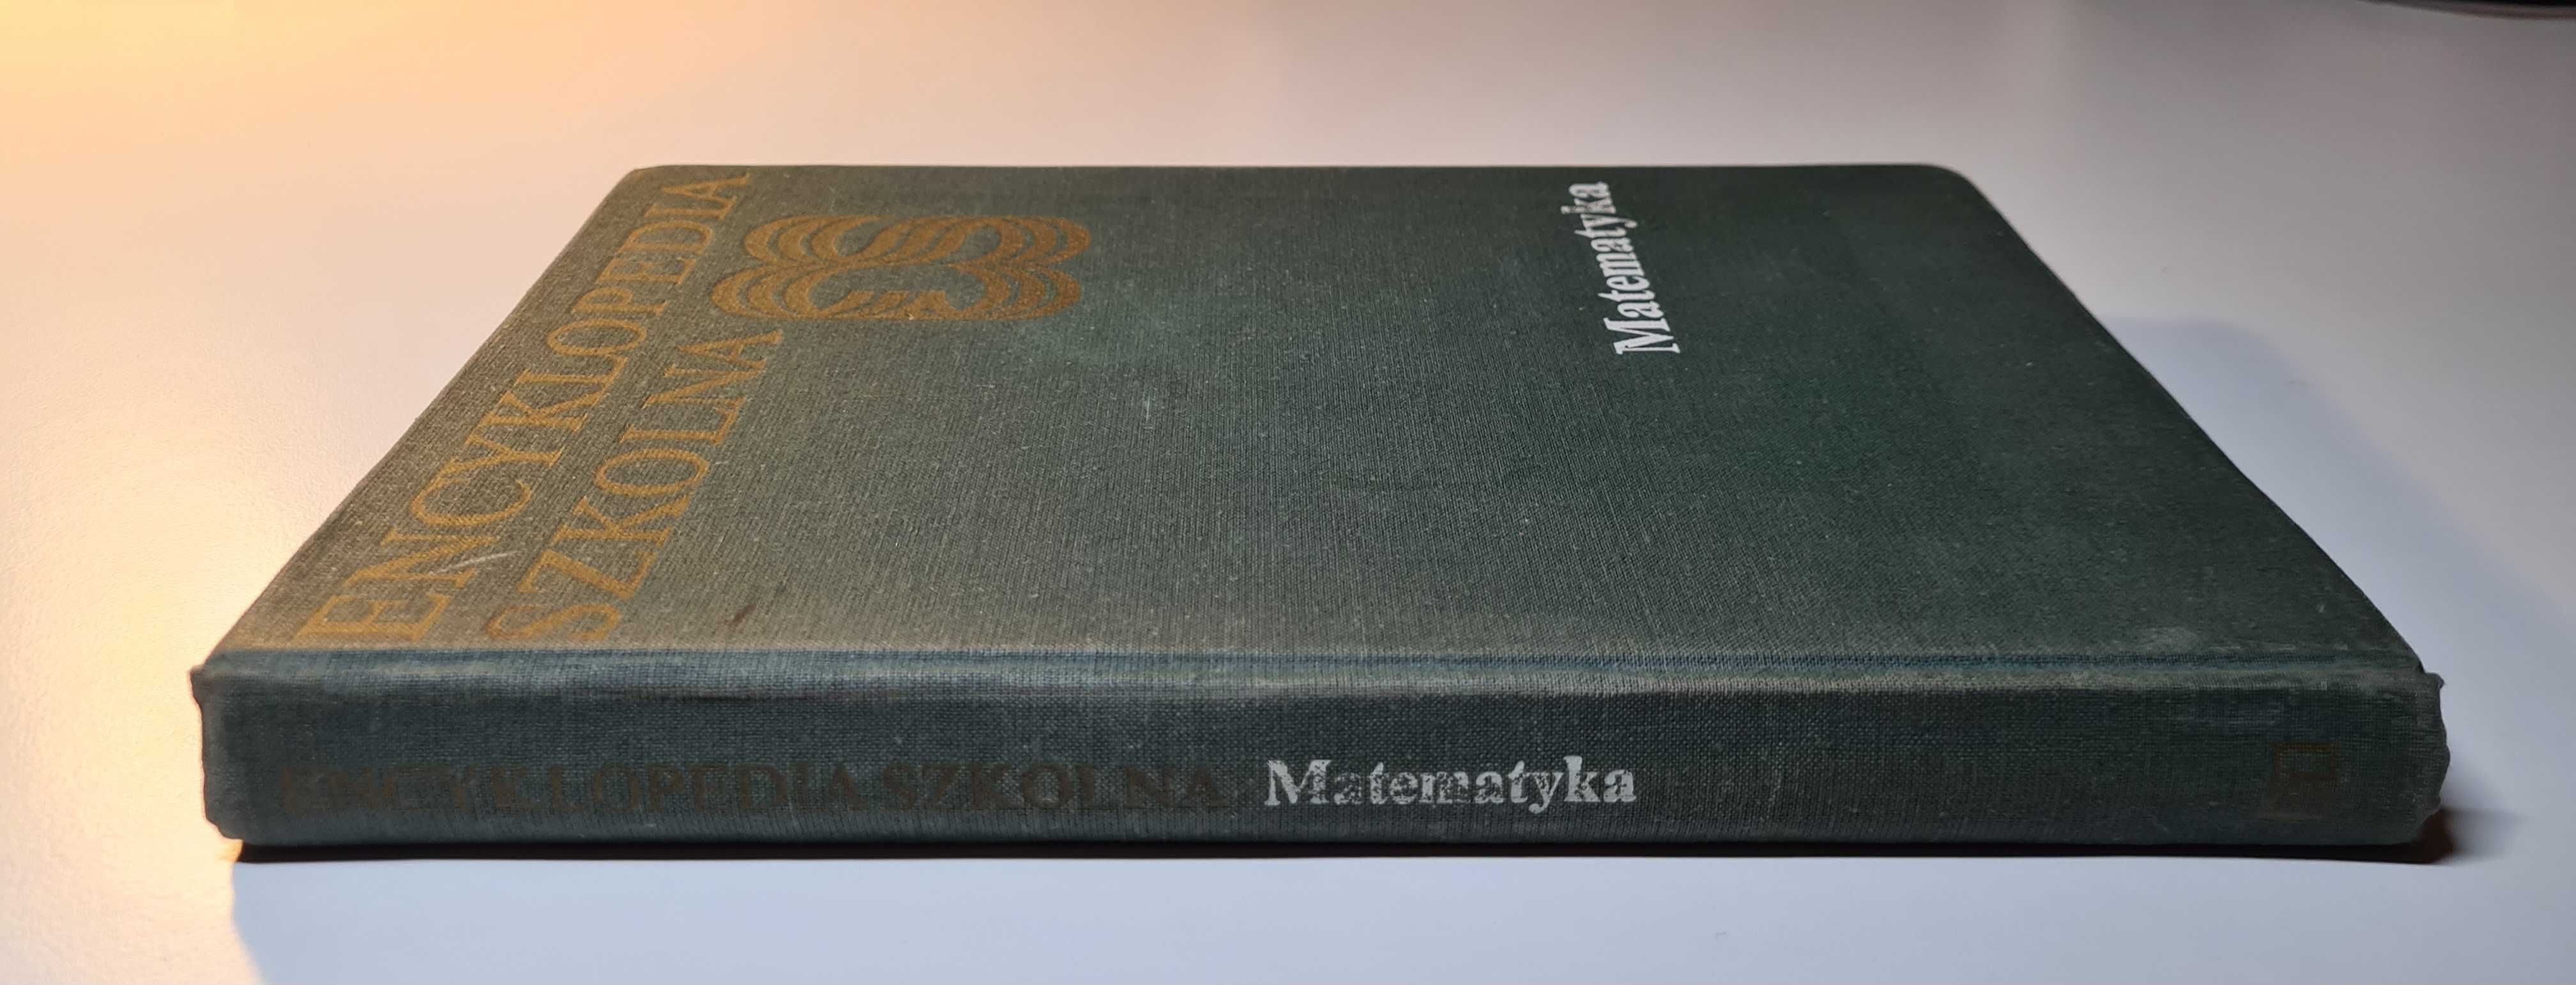 Encyklopedia Szkolna Matematyka